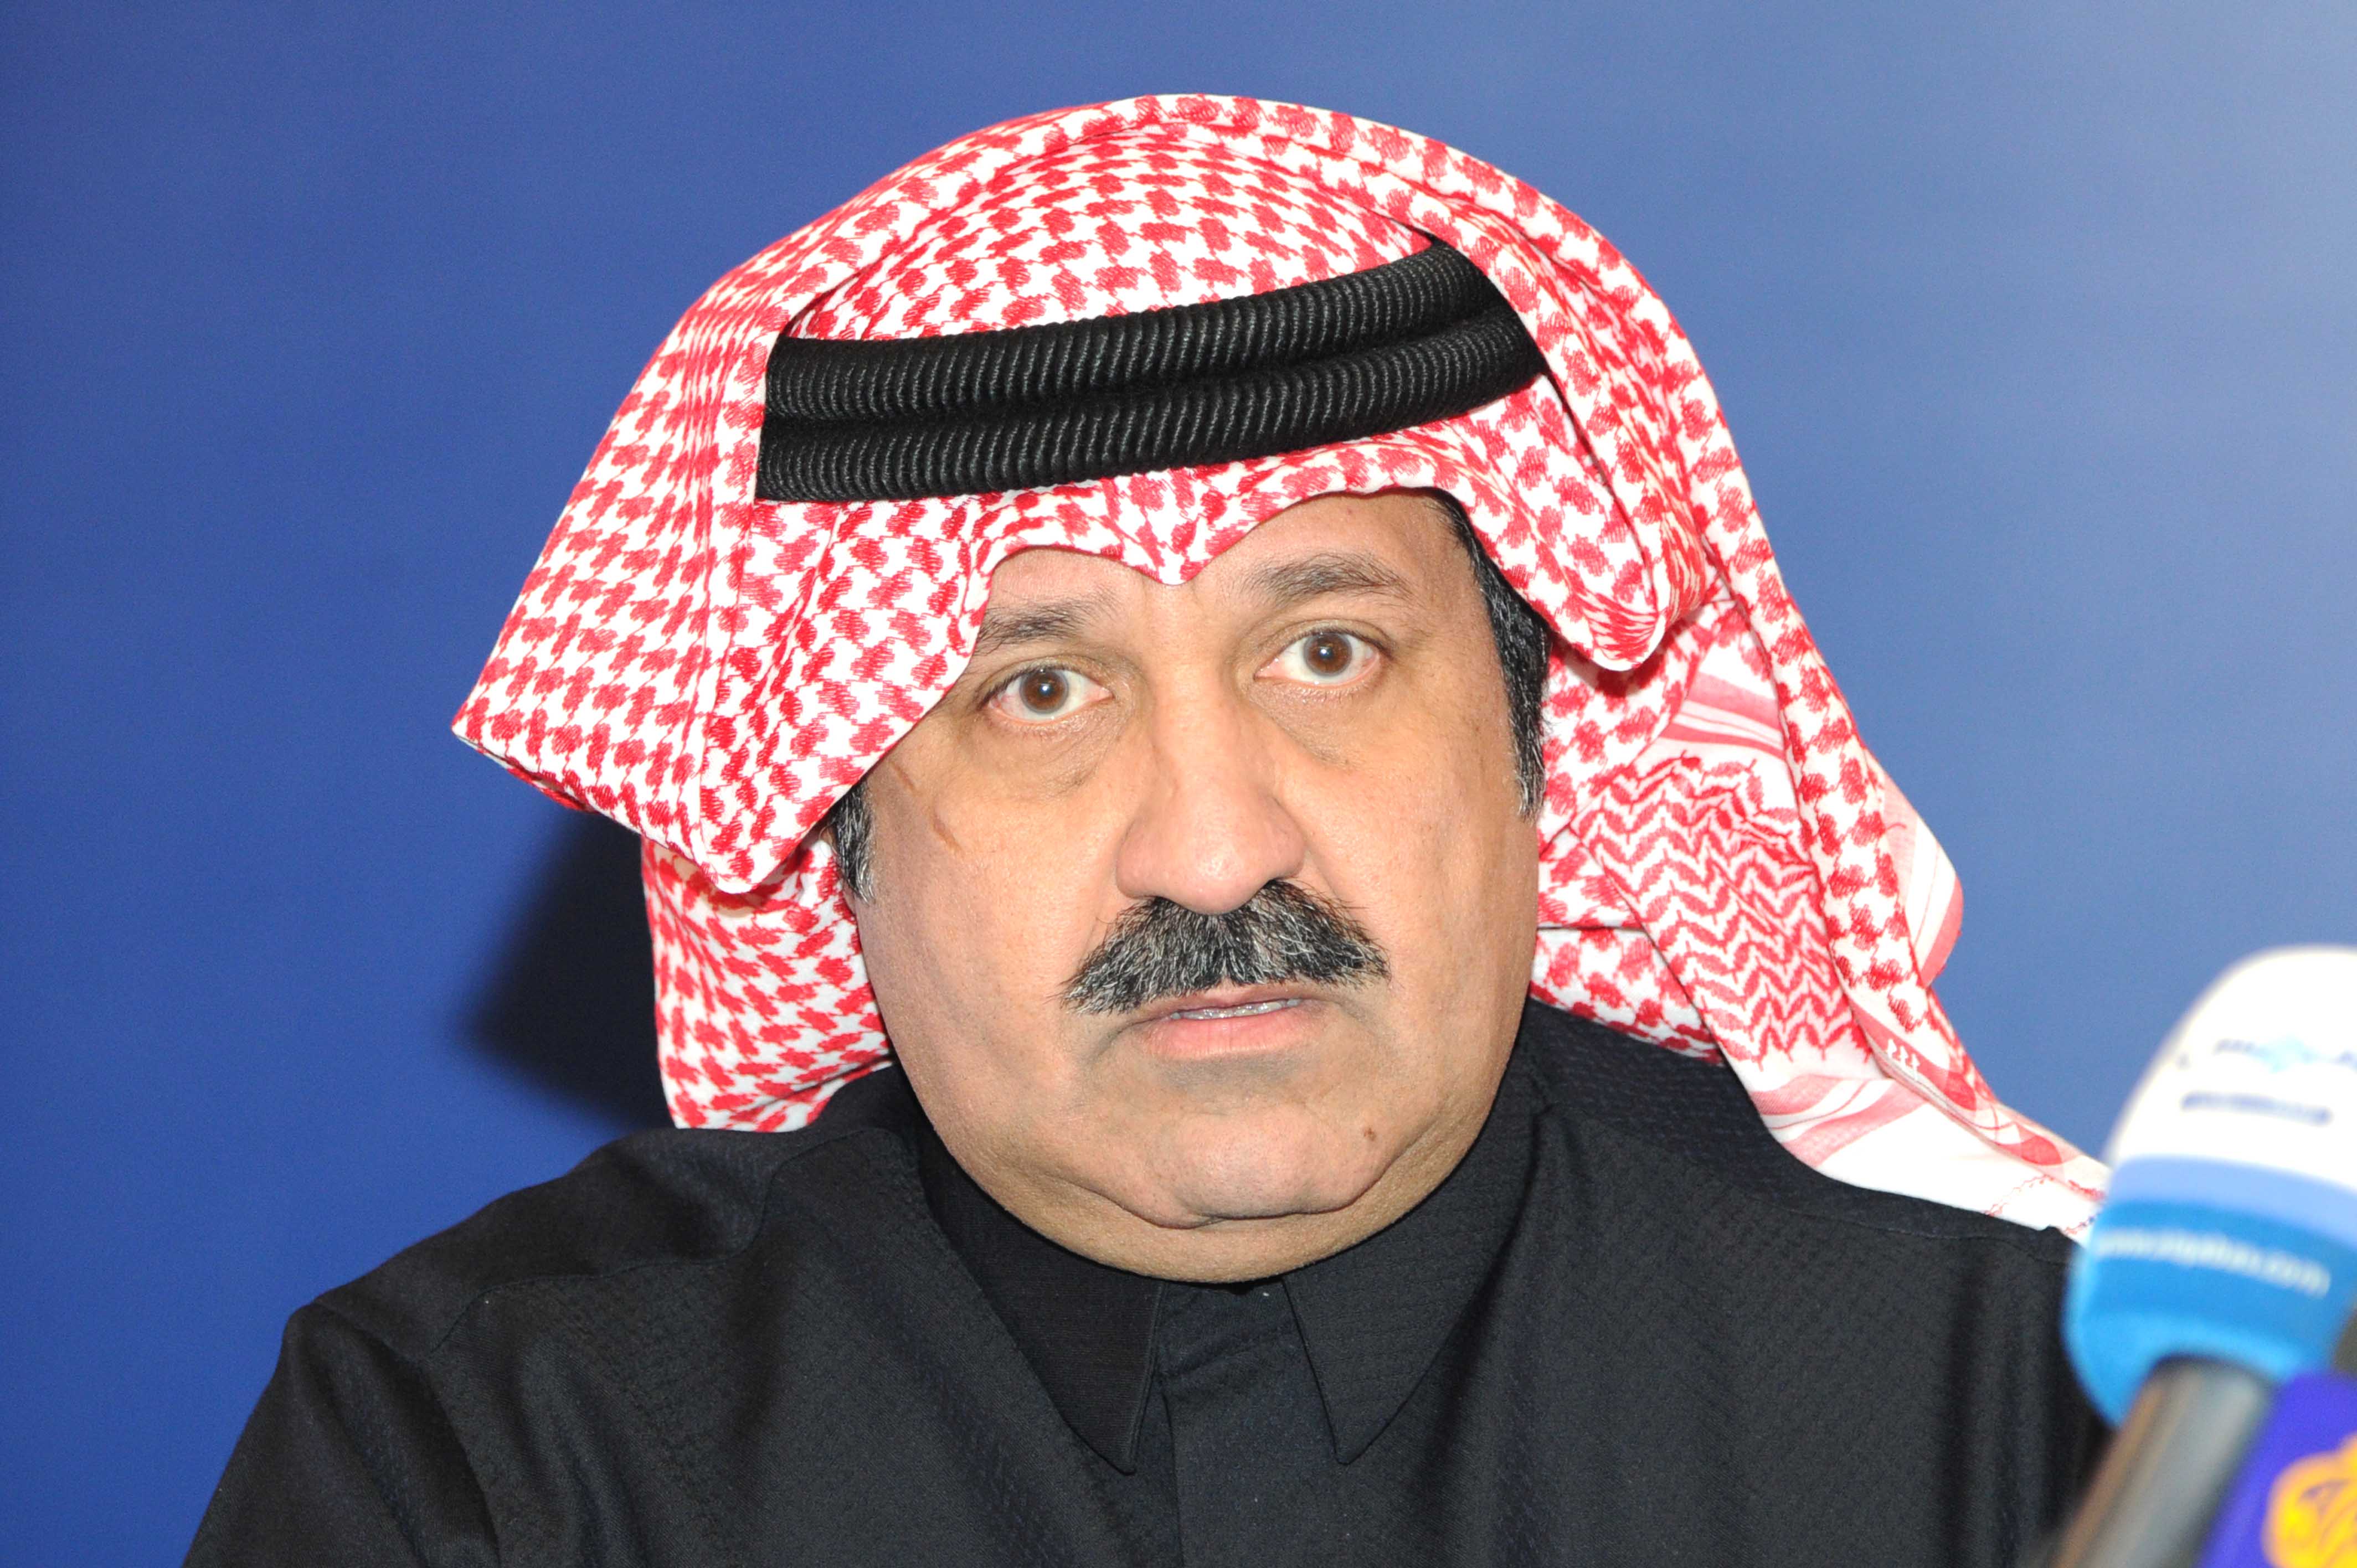 Sheikh Ahmad Al-Yousef Al-Sabah